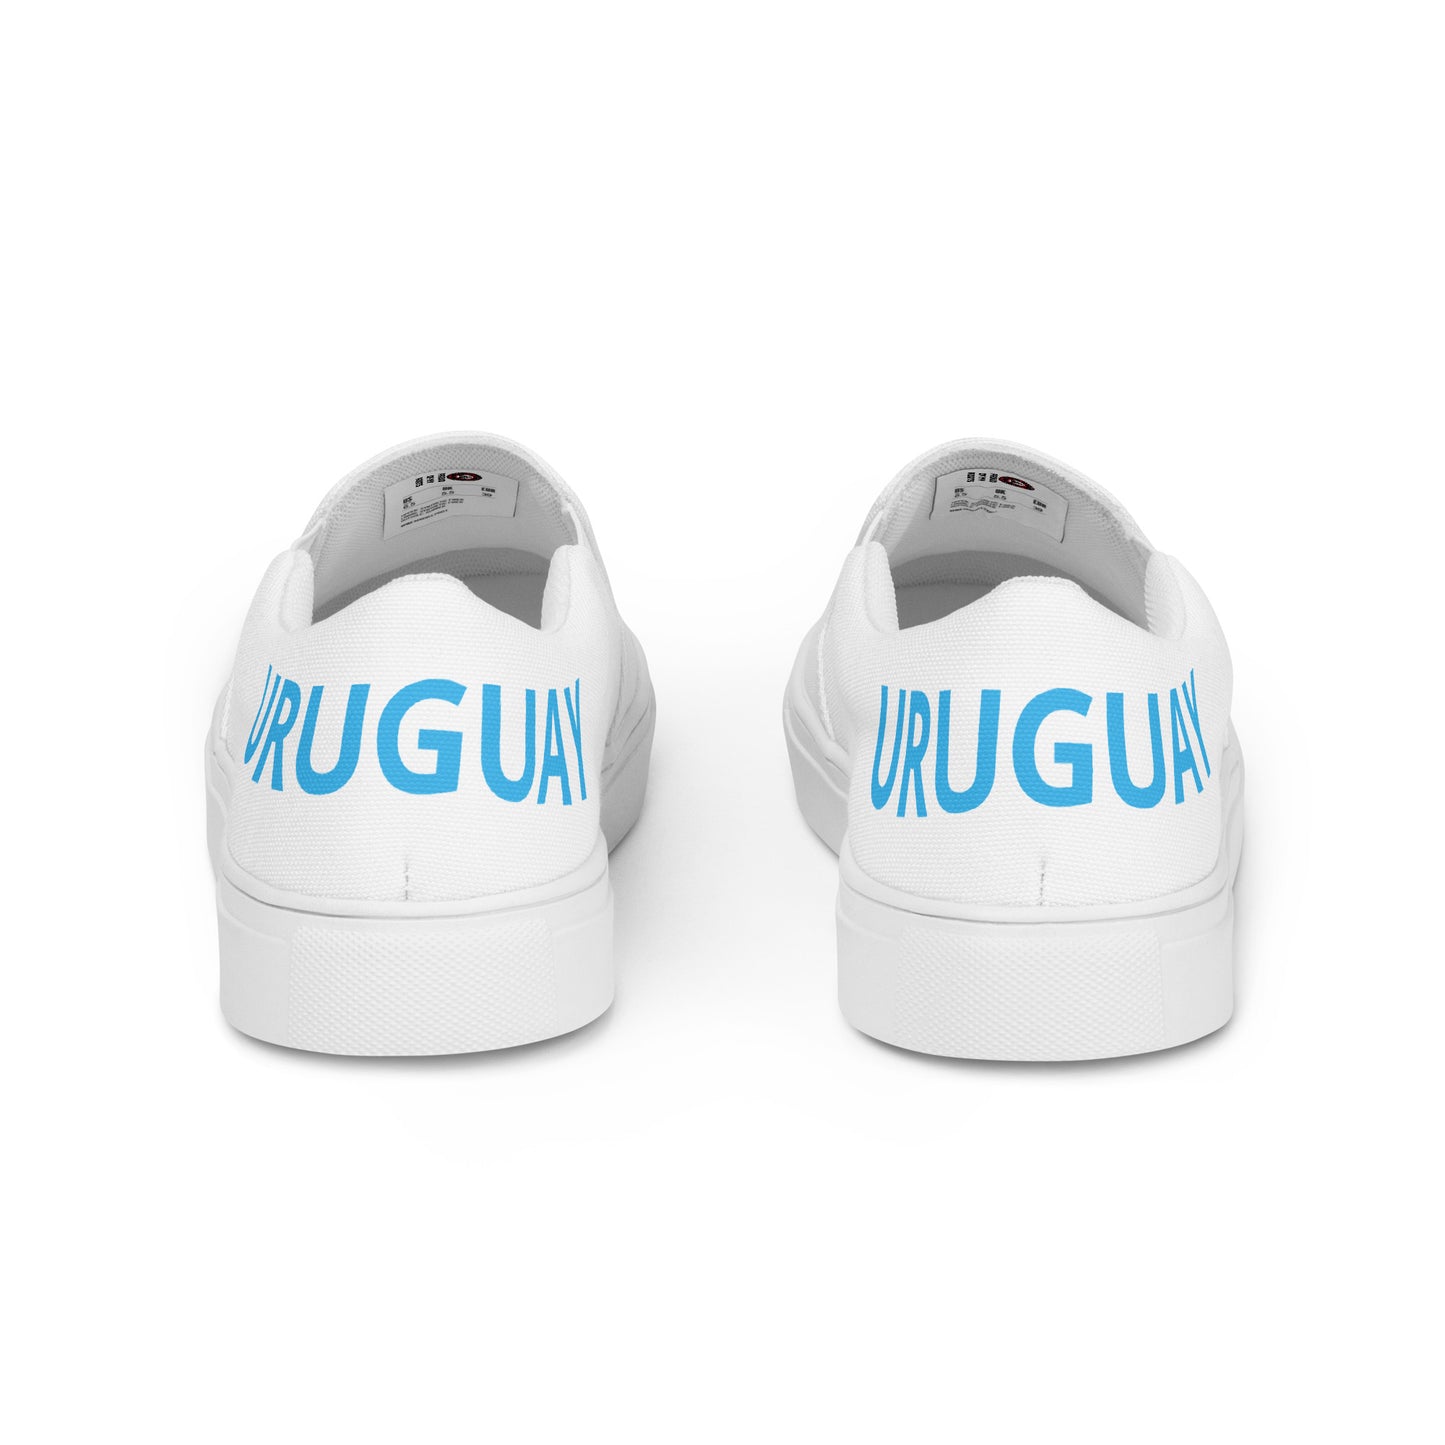 Uruguay - Women - White - Slip-on shoes